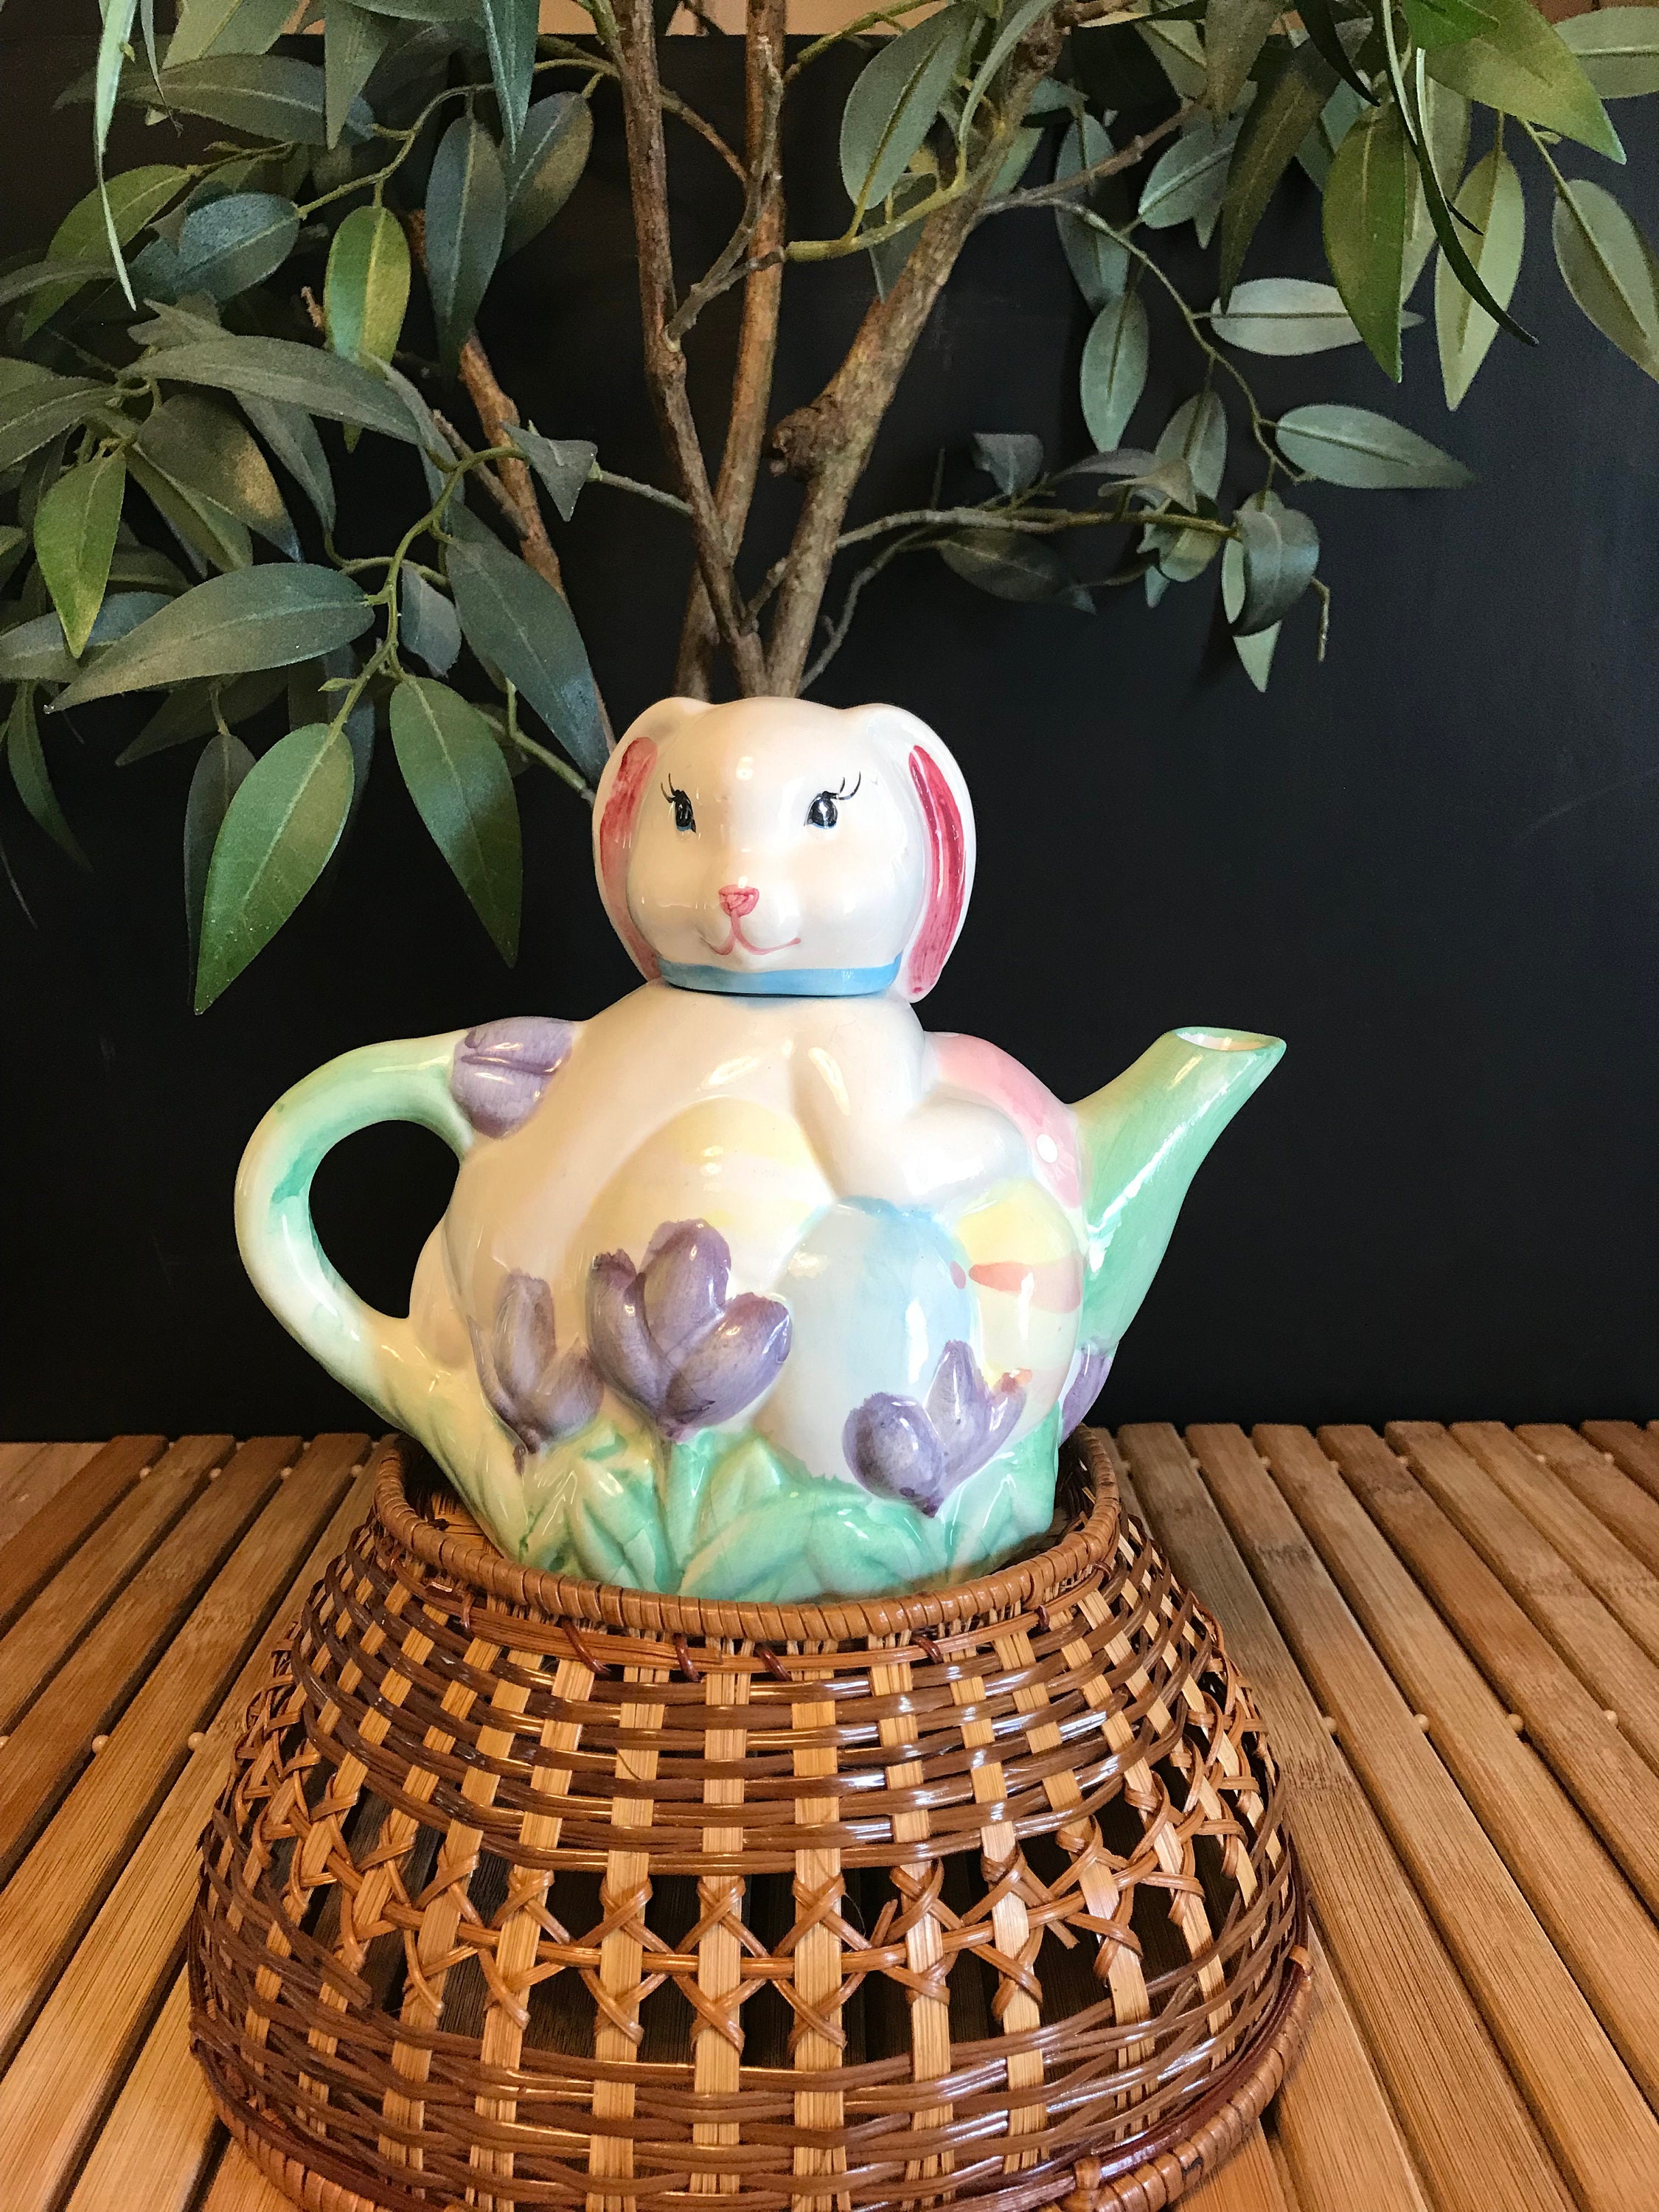 Rabbit Ceramic Teapot Mini Teapot Ceramic Cute Teapot European Ceramic  Teapot Ceramic Loose Leaf Teapot Stove Tea Kettle Small Tea Kettle  Decorative